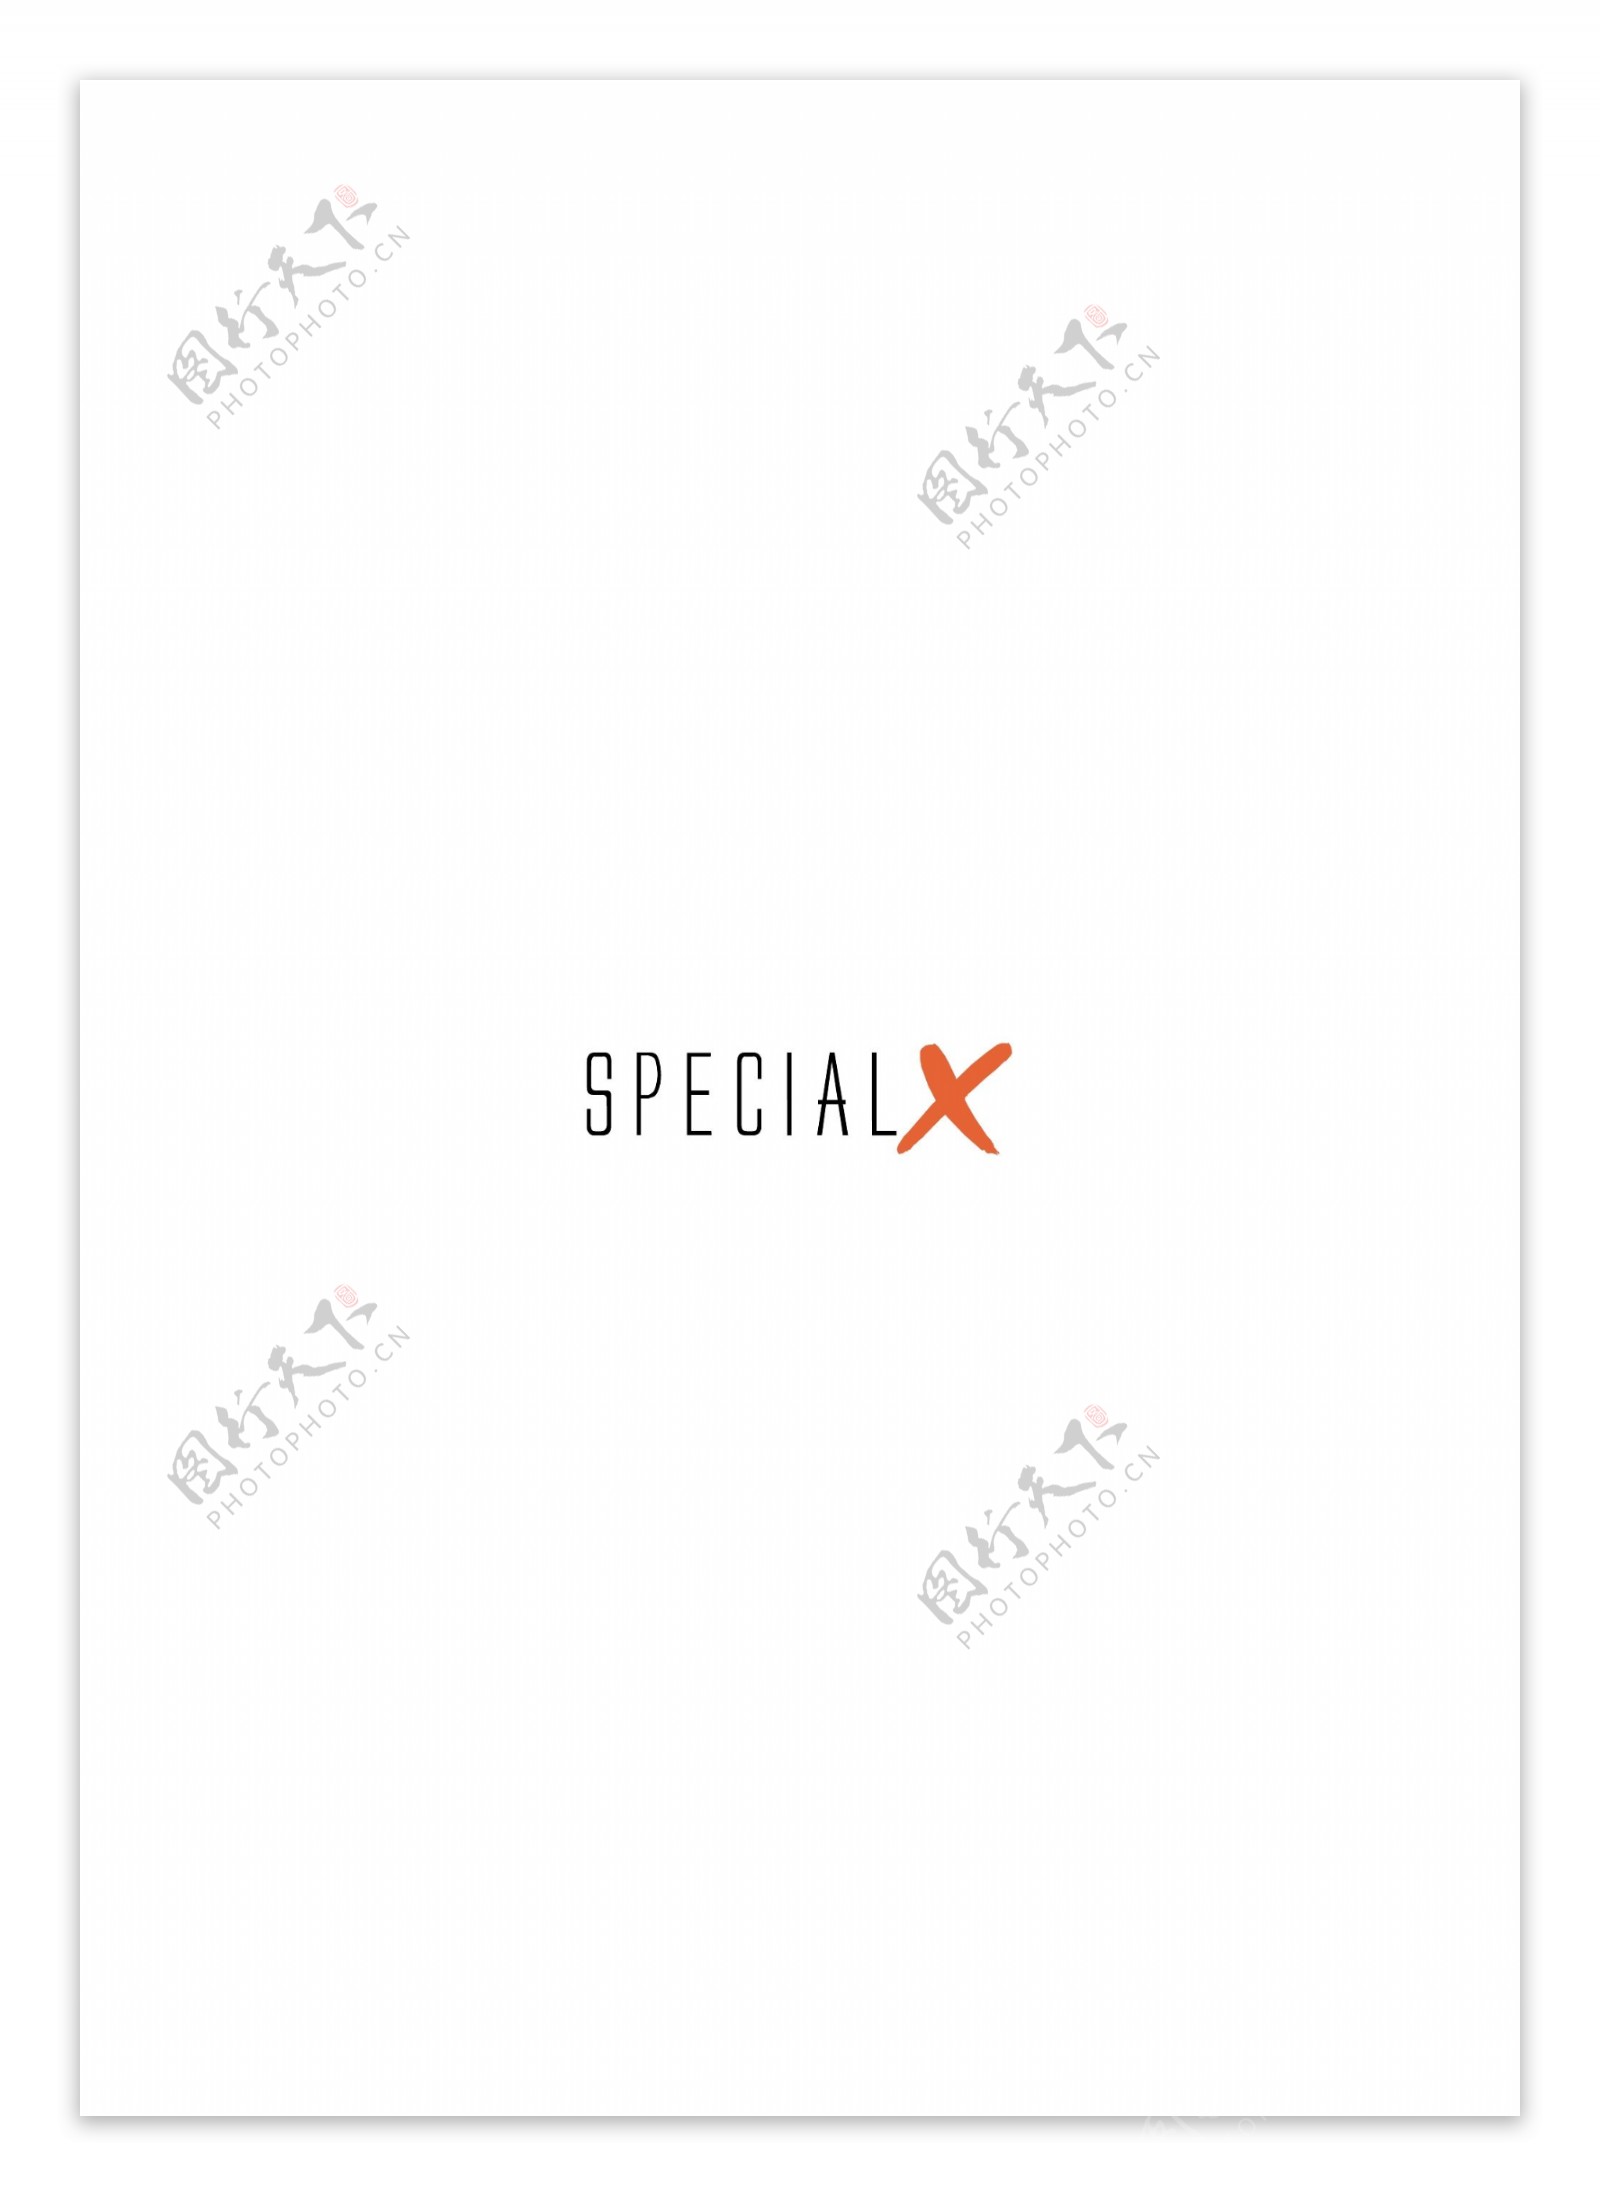 SpecialXlogo设计欣赏SpecialX下载标志设计欣赏